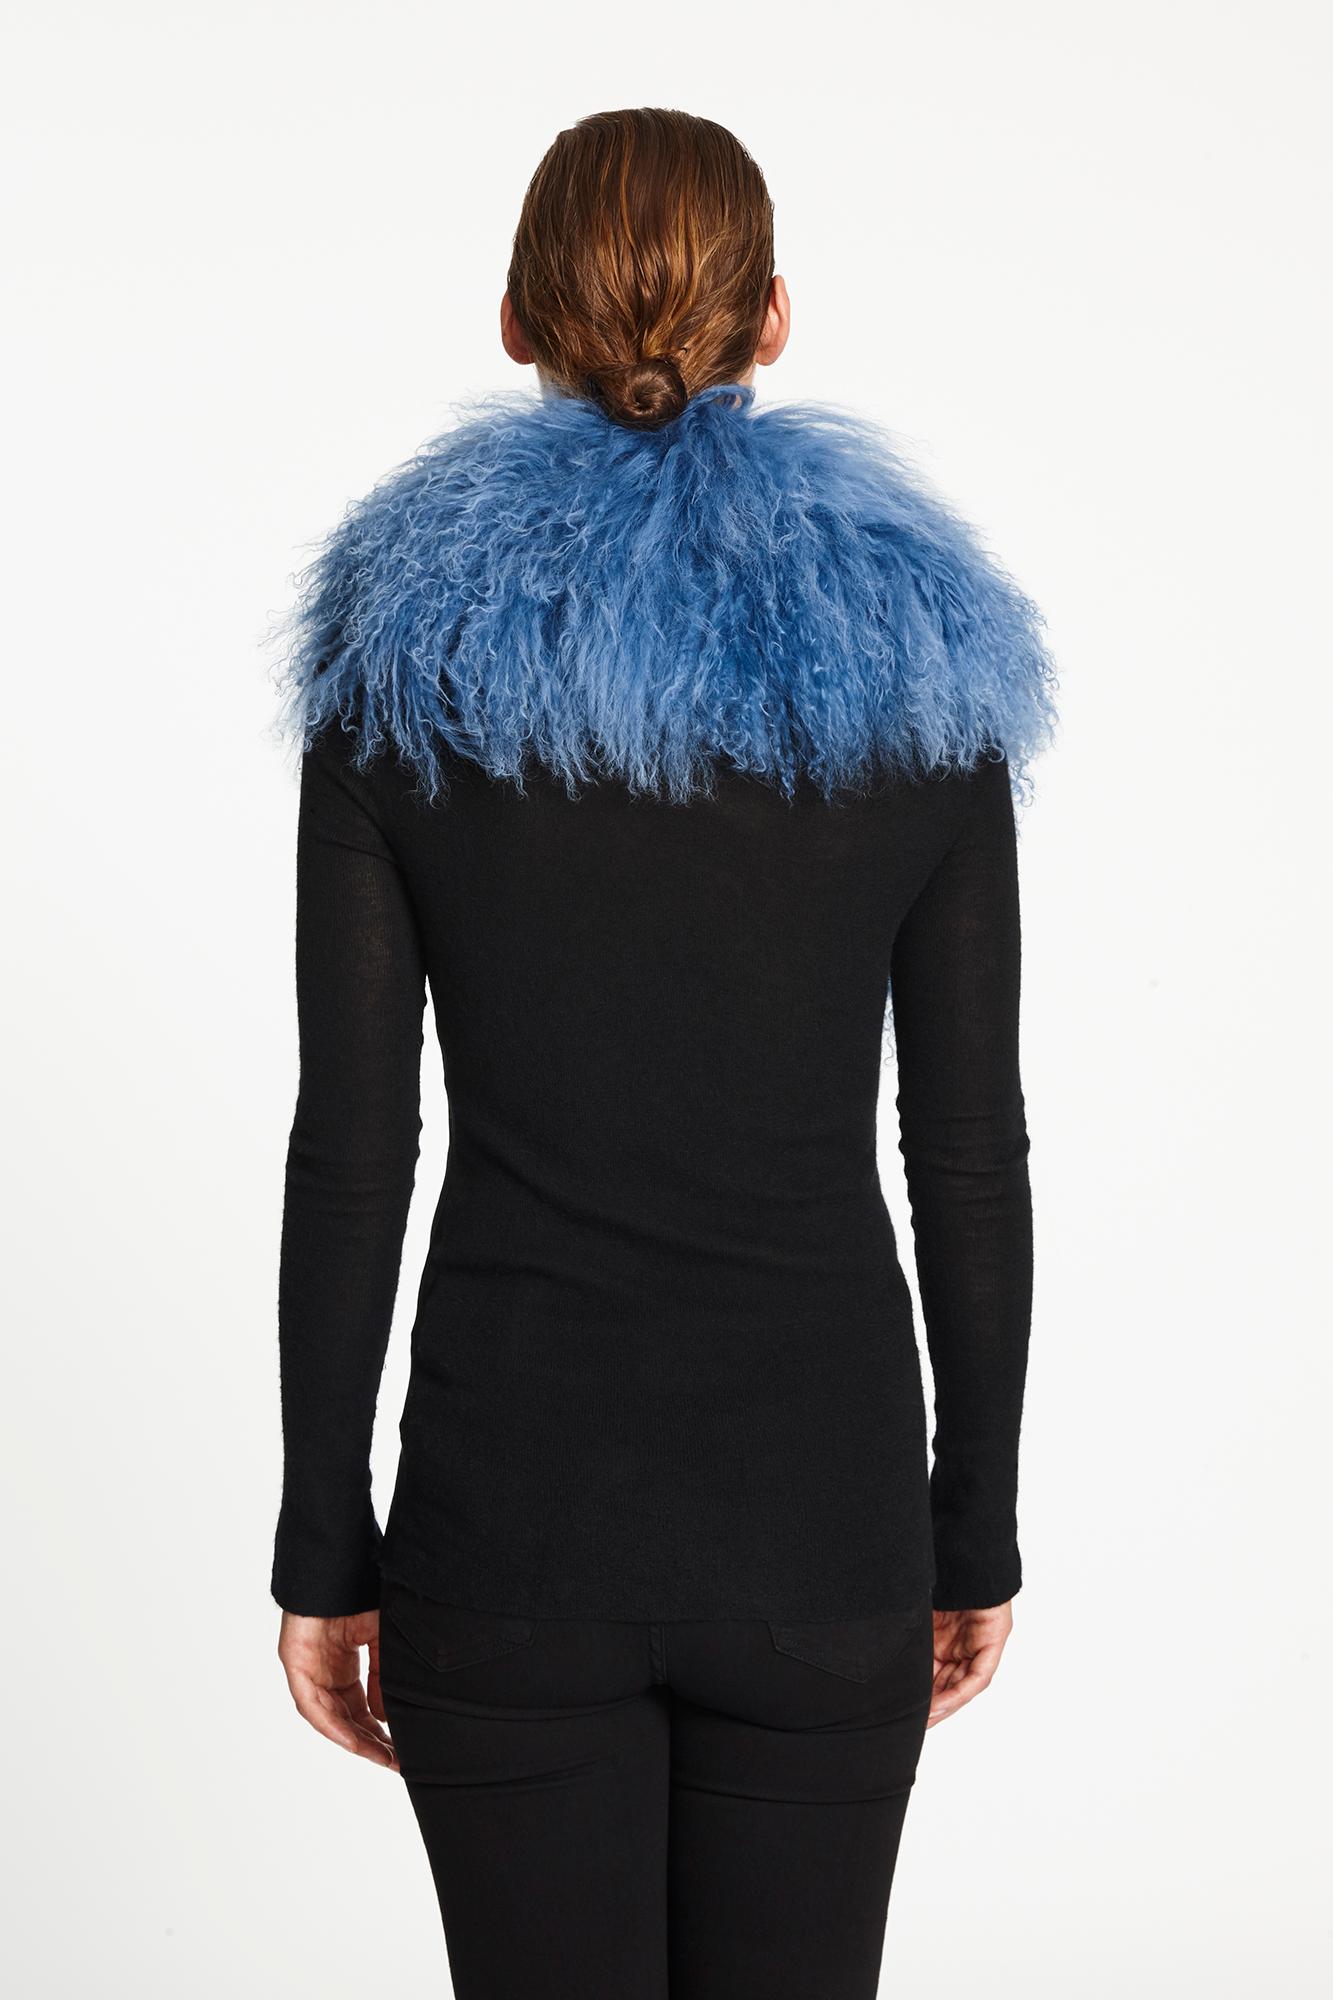 Verheyen London Shawl Collar in Blue Topaz Mongolian Lamb Fur lined in silk new 4